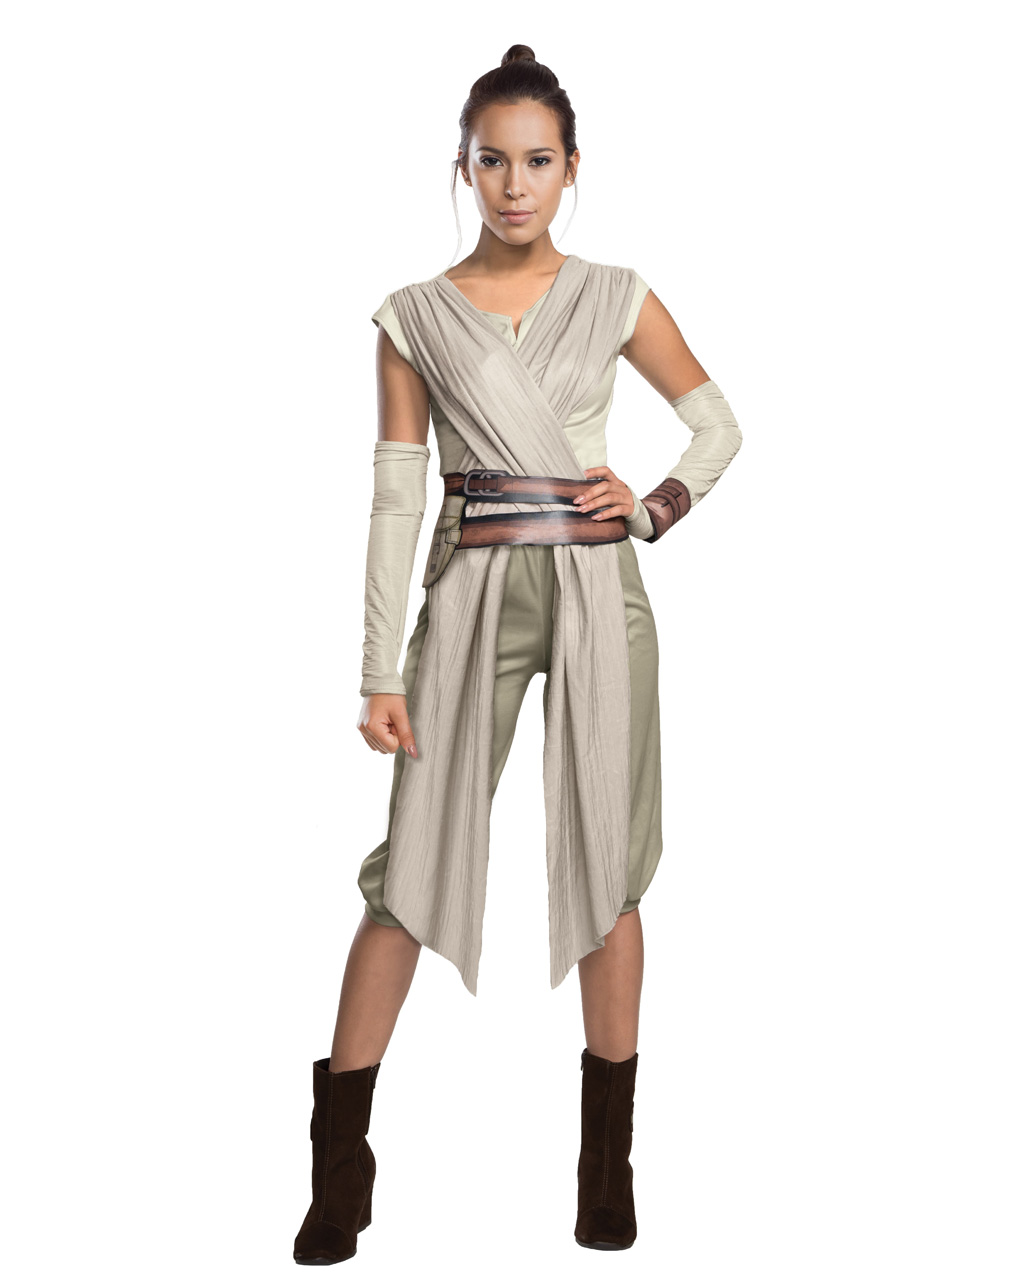 Rey women's costume Deluxe.